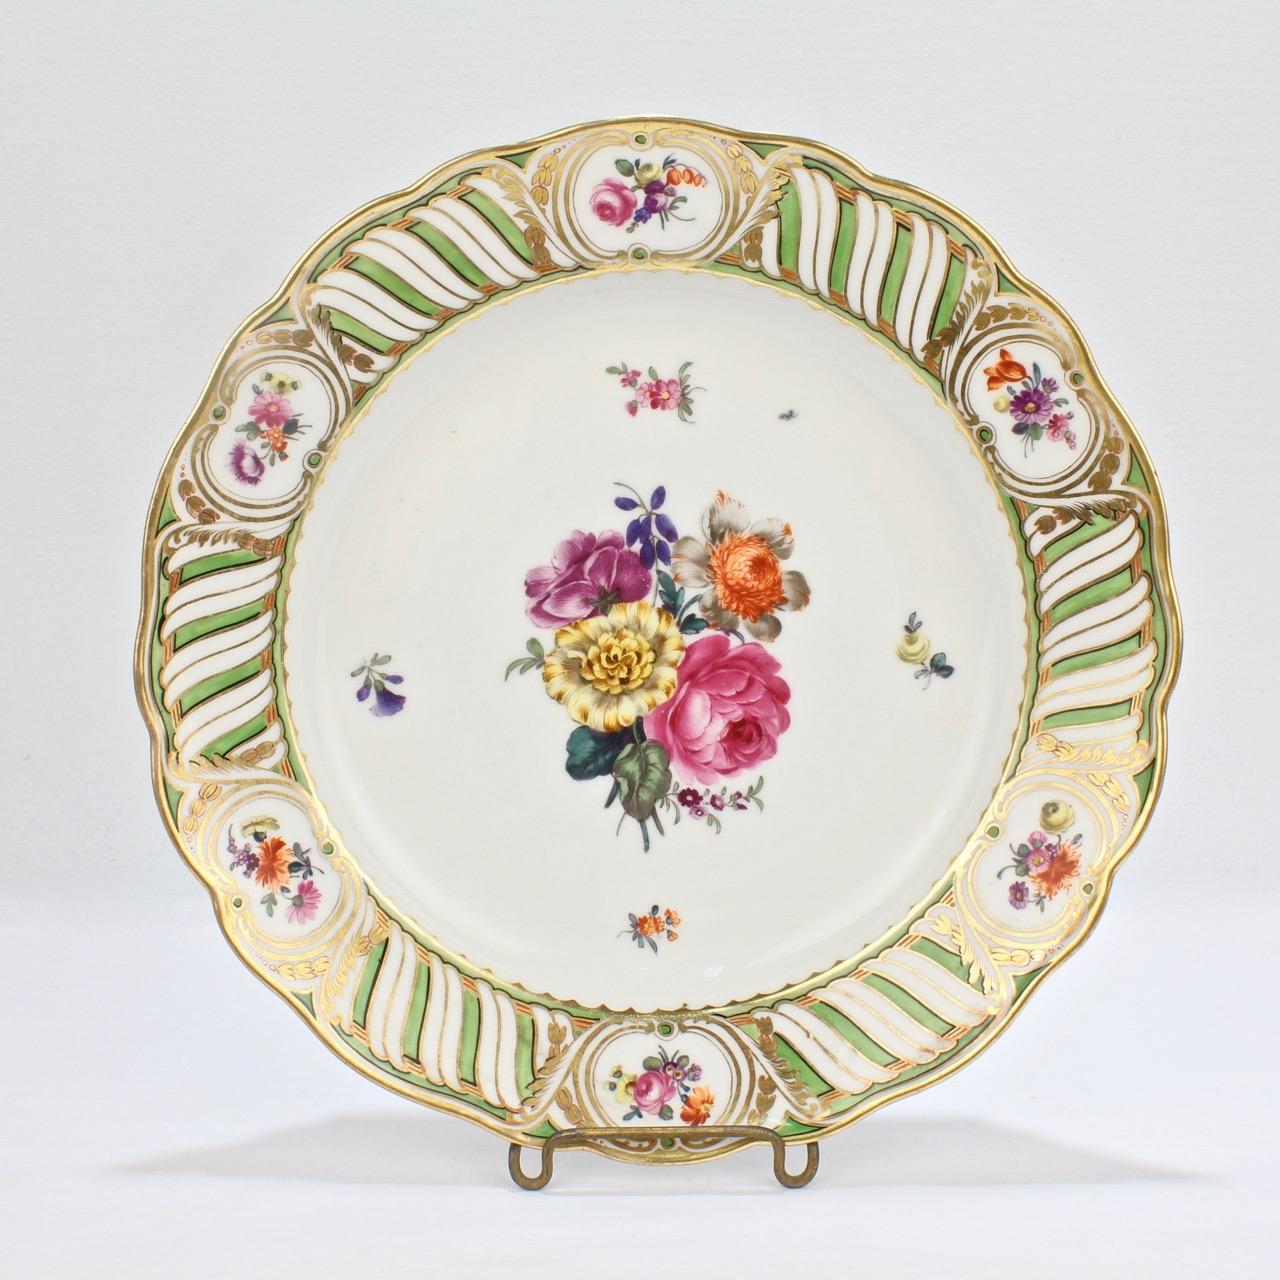 6 Antique Vienna Porcelain Plates with Green Borders & Deutsche Blumen Flowers 2